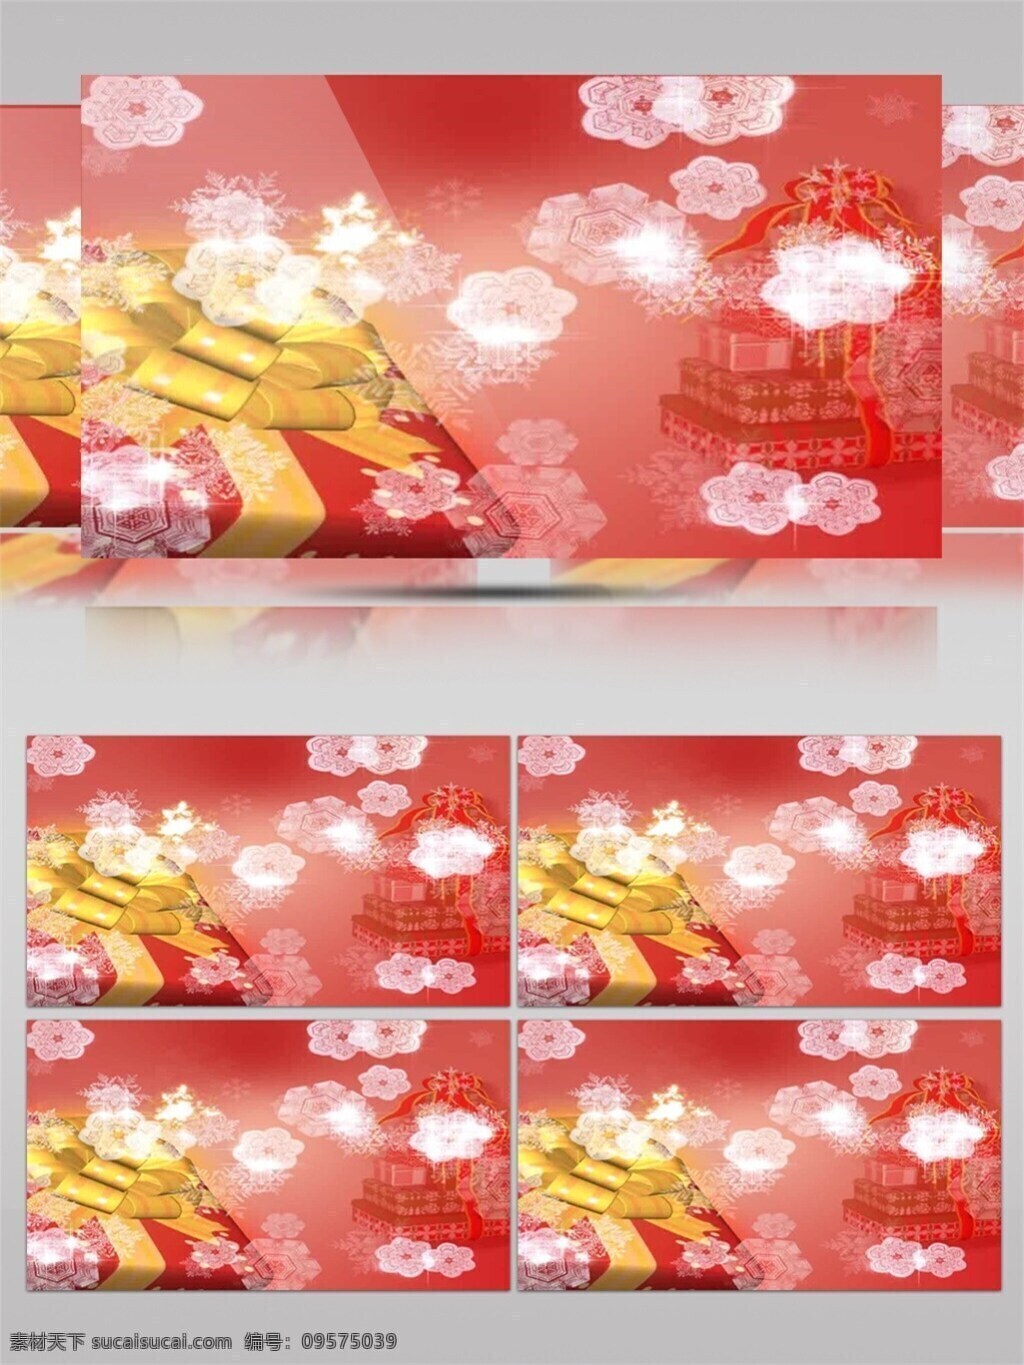 粉红 圣诞节 视频 节日壁纸 节日开心 节日庆祝 礼物盒子 圣诞礼物